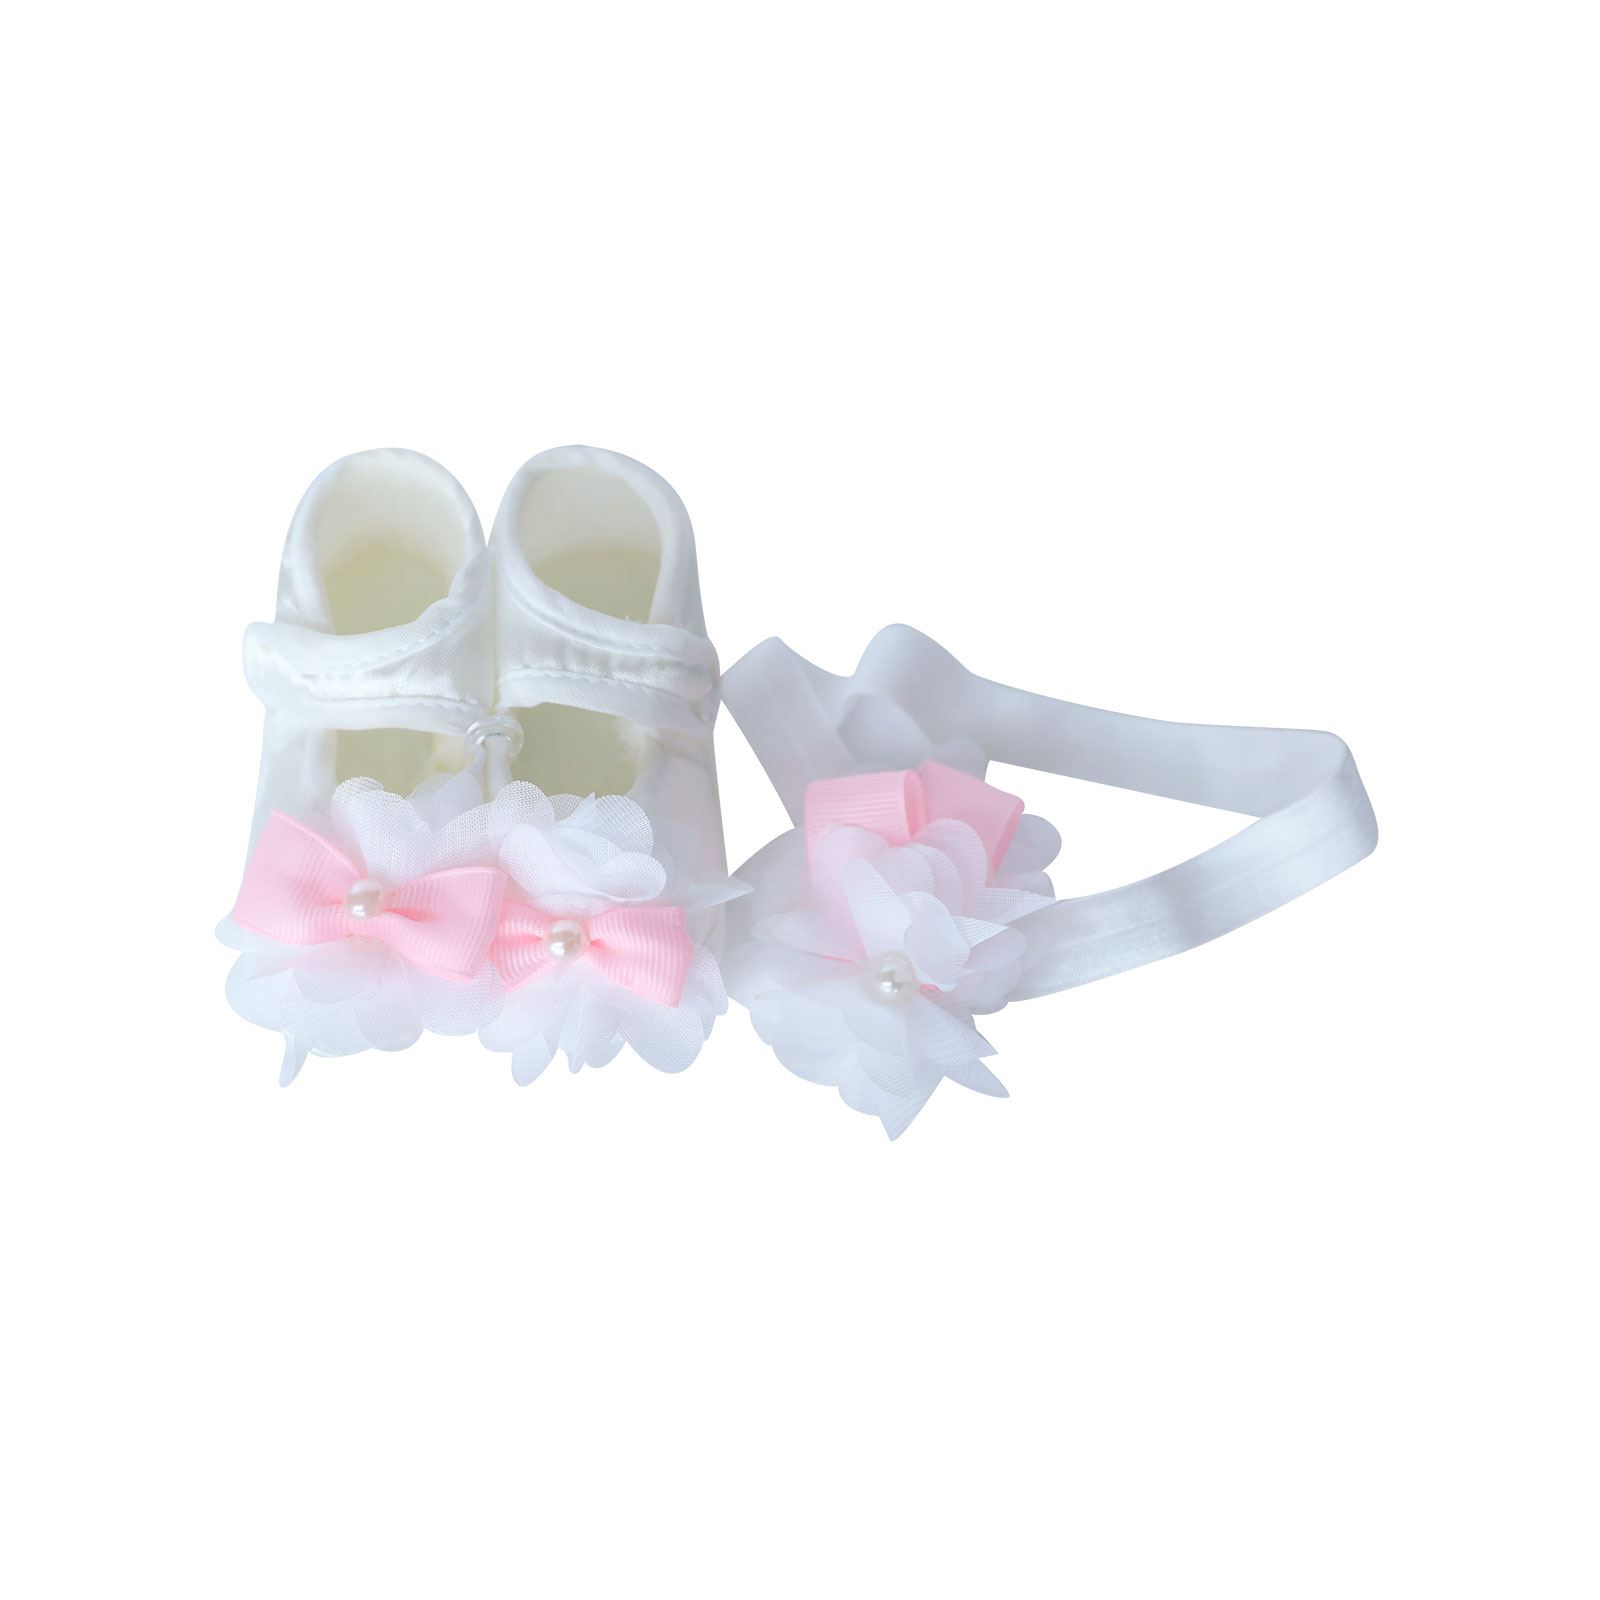 Öz&Ay Kız Bebek Lohusa Tac Terlik Bebek Bant ve Ayakkabı Beyaz